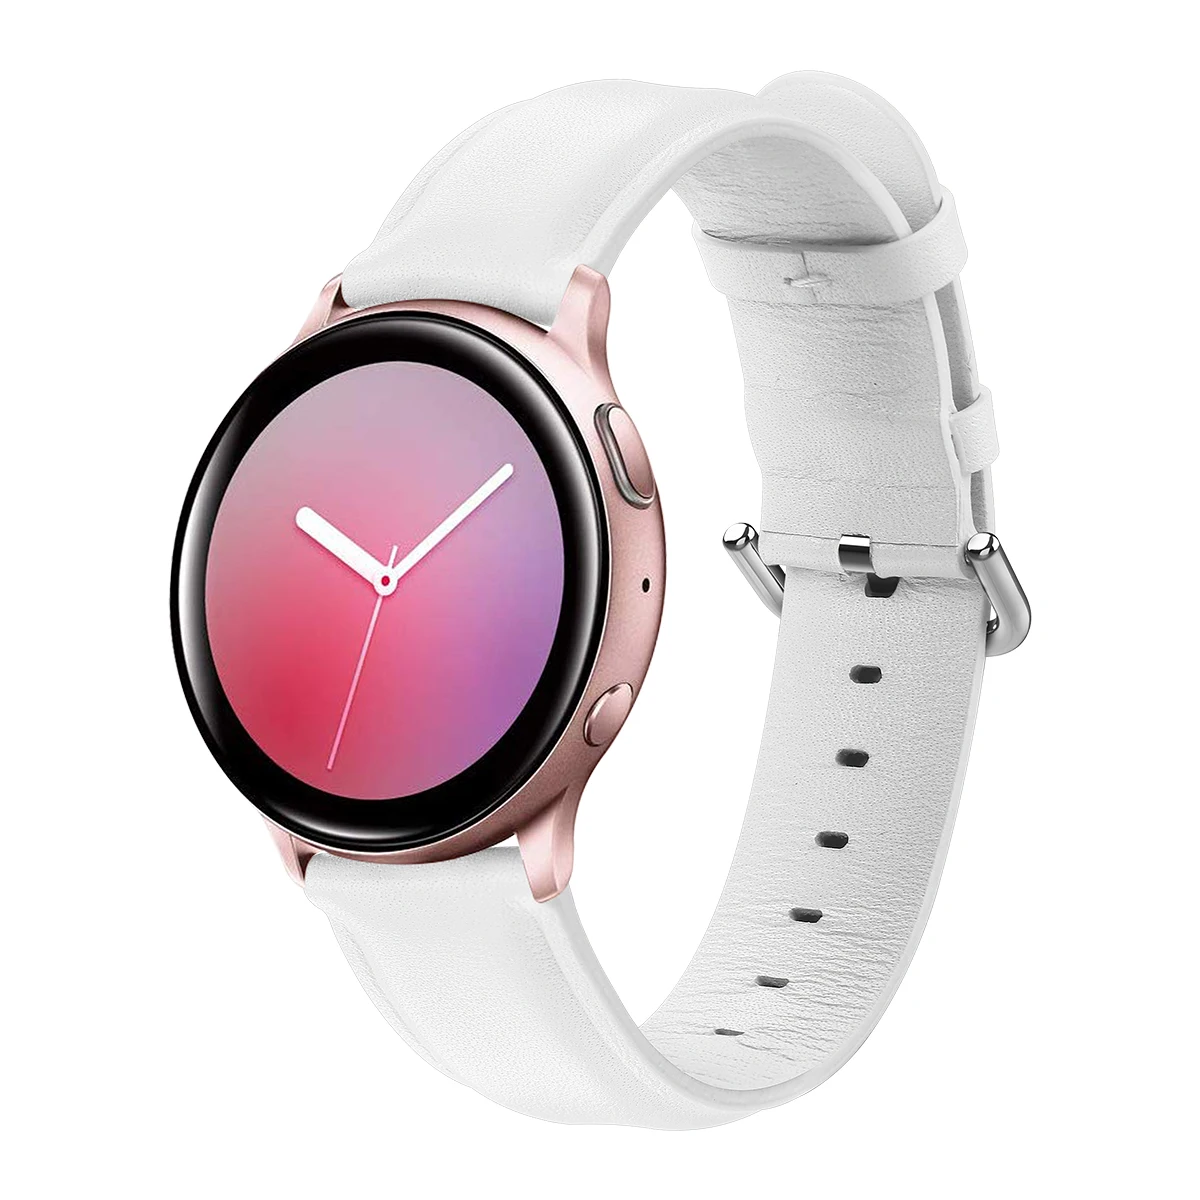 Samsung часы розовые. Часы Samsung Galaxy Active 2 40мм. Samsung Galaxy watch Active 2 кожаный ремешок. Самсунг вотч Актив 2 розовые. Ремешок на часы самсунг галакси вотч Актив 2.